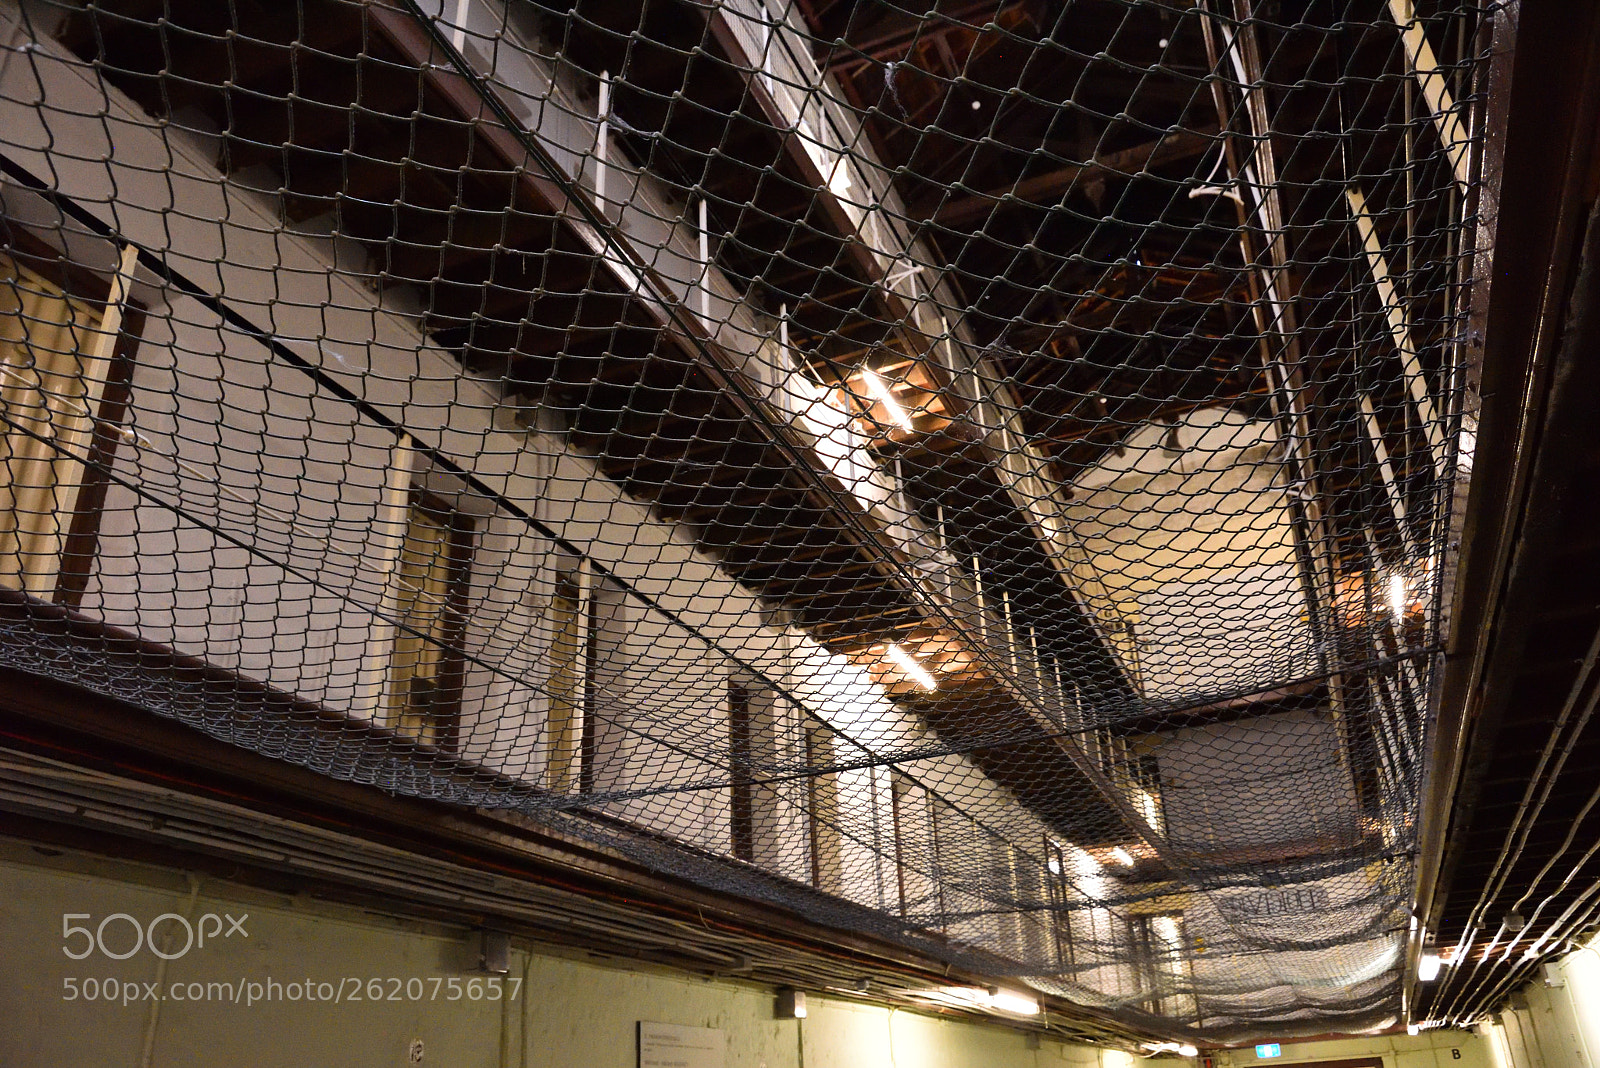 AF Zoom-Nikkor 28-200mm f/3.5-5.6G IF-ED sample photo. Fremantle prison photography